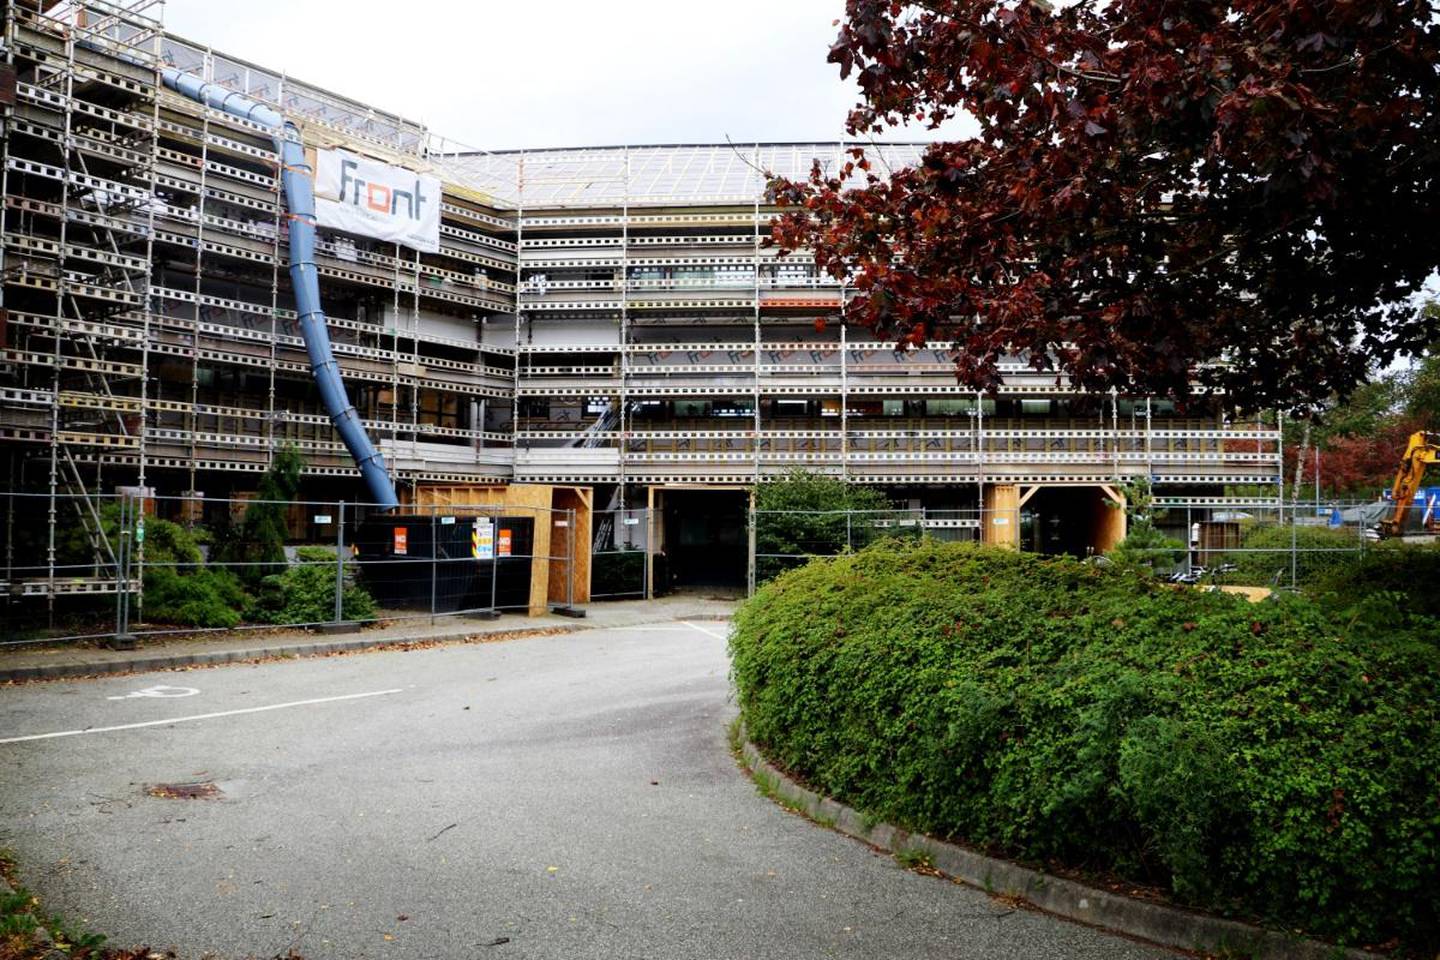 Etter et smitteutbrudd ved Vågedalen sykehjem i Stavanger har kommunen vedtatt at det skal innføres strengere tiltak ved sykehjem.